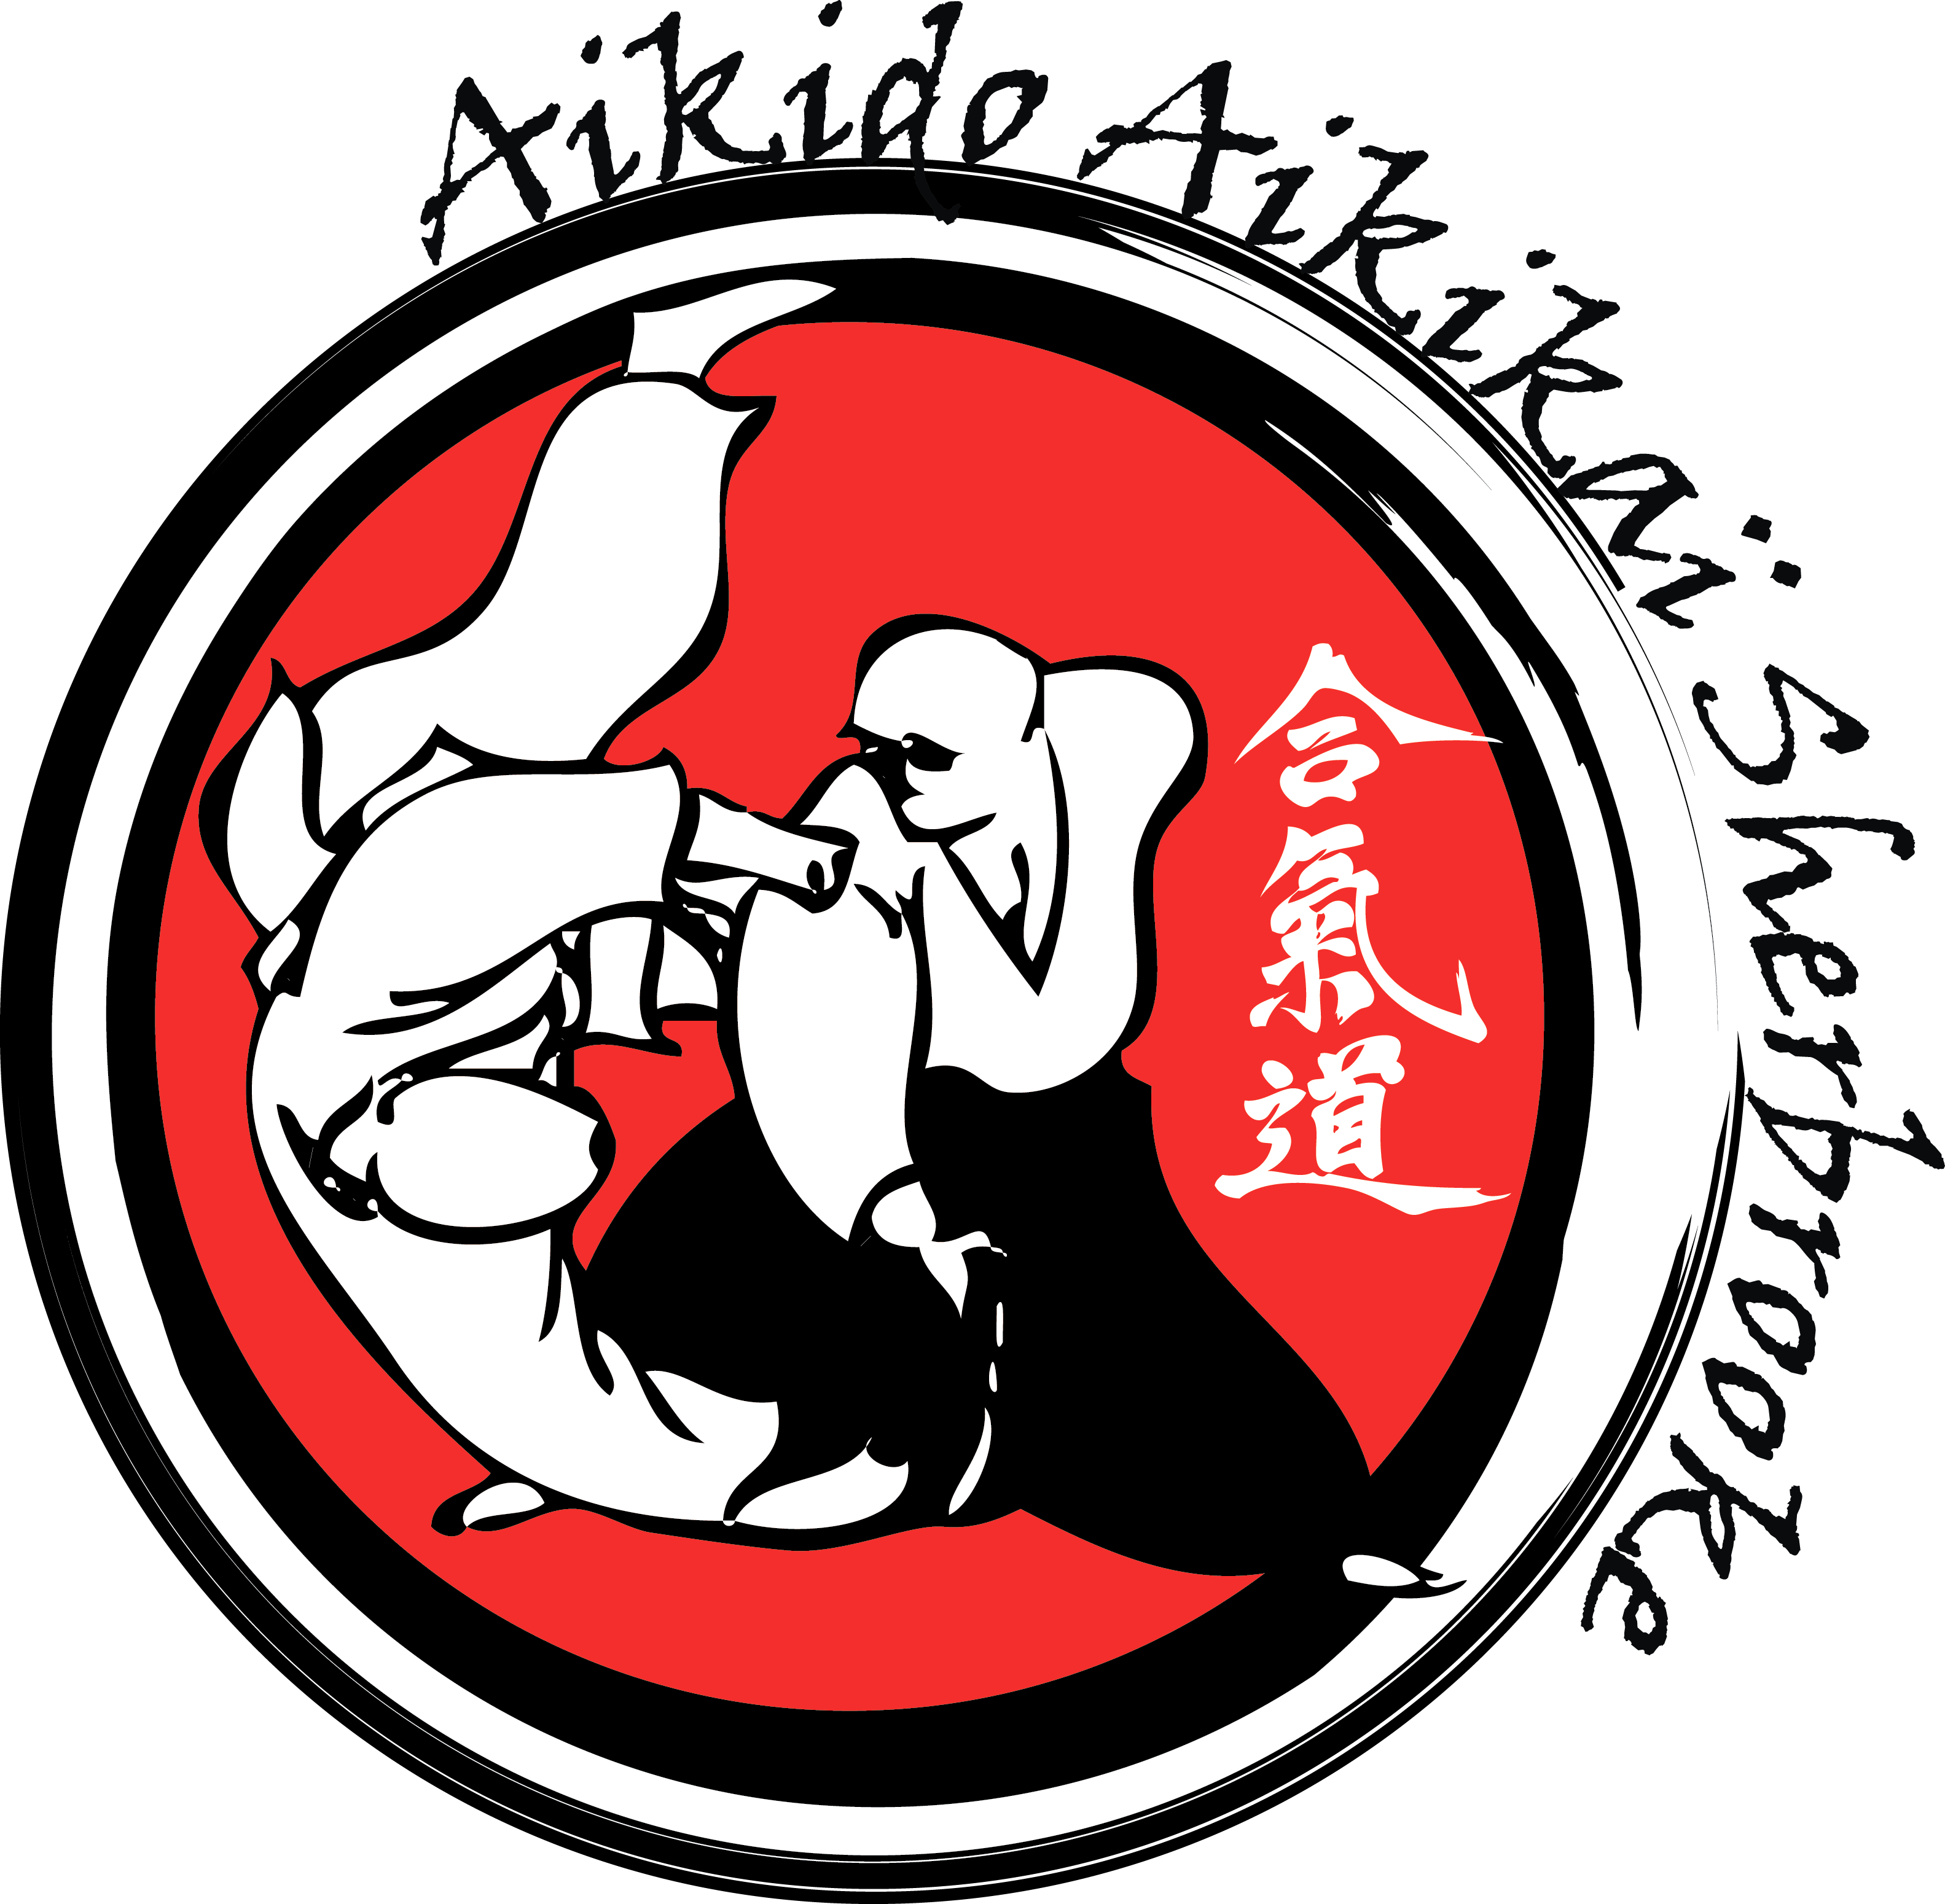 Aikido Aikikai Sherbrooke - Patrick Michel